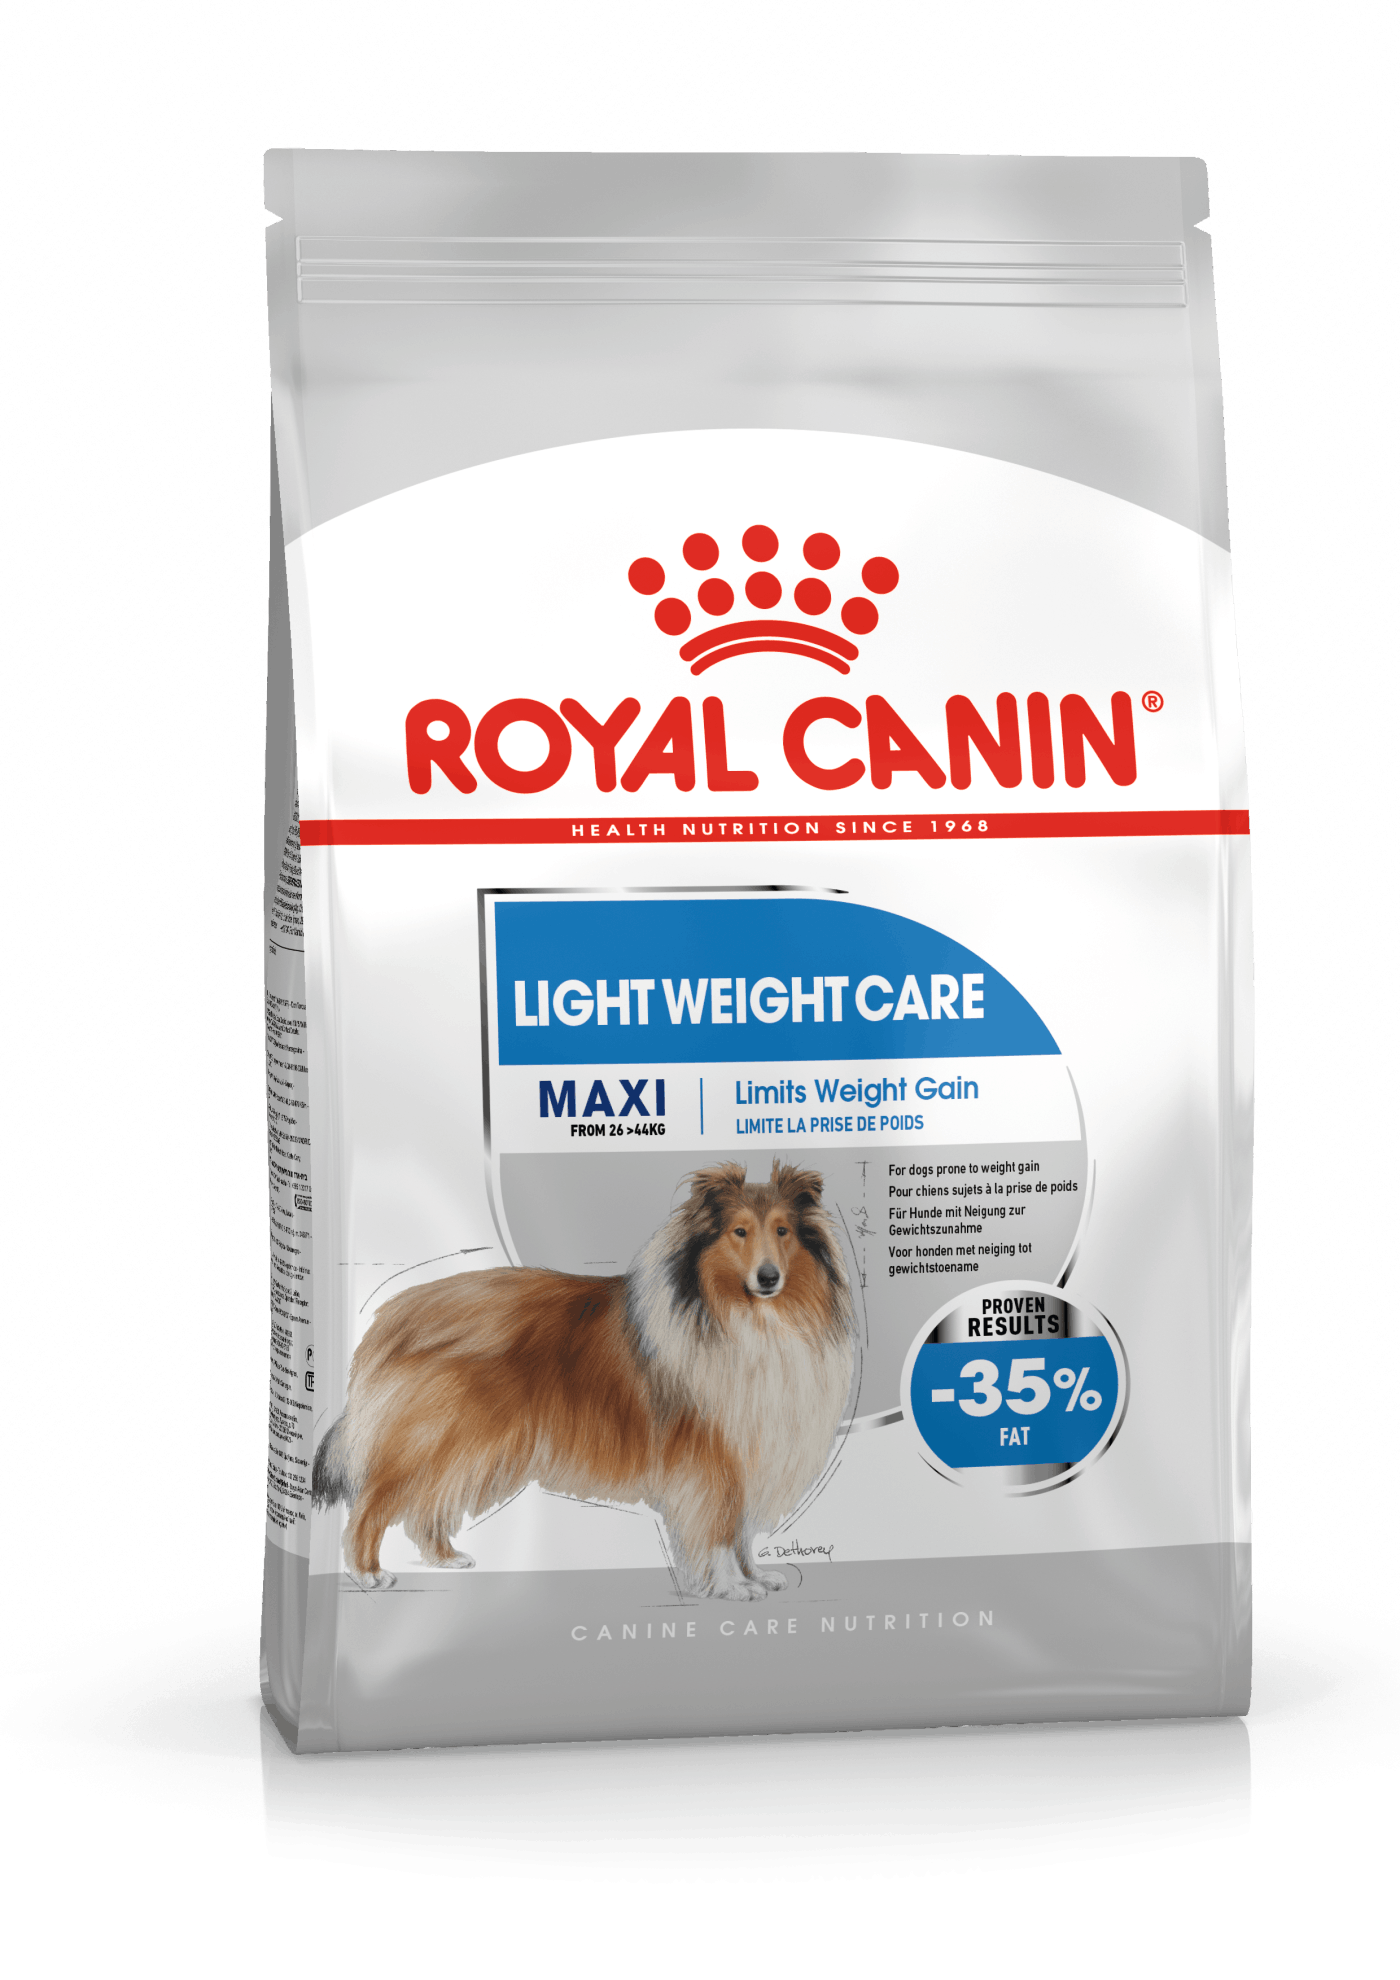 Royal Canin Maxi LIGHT Weightcare. Hunde med særlige behov over 15 måneder. 26-44kg. (12kg)